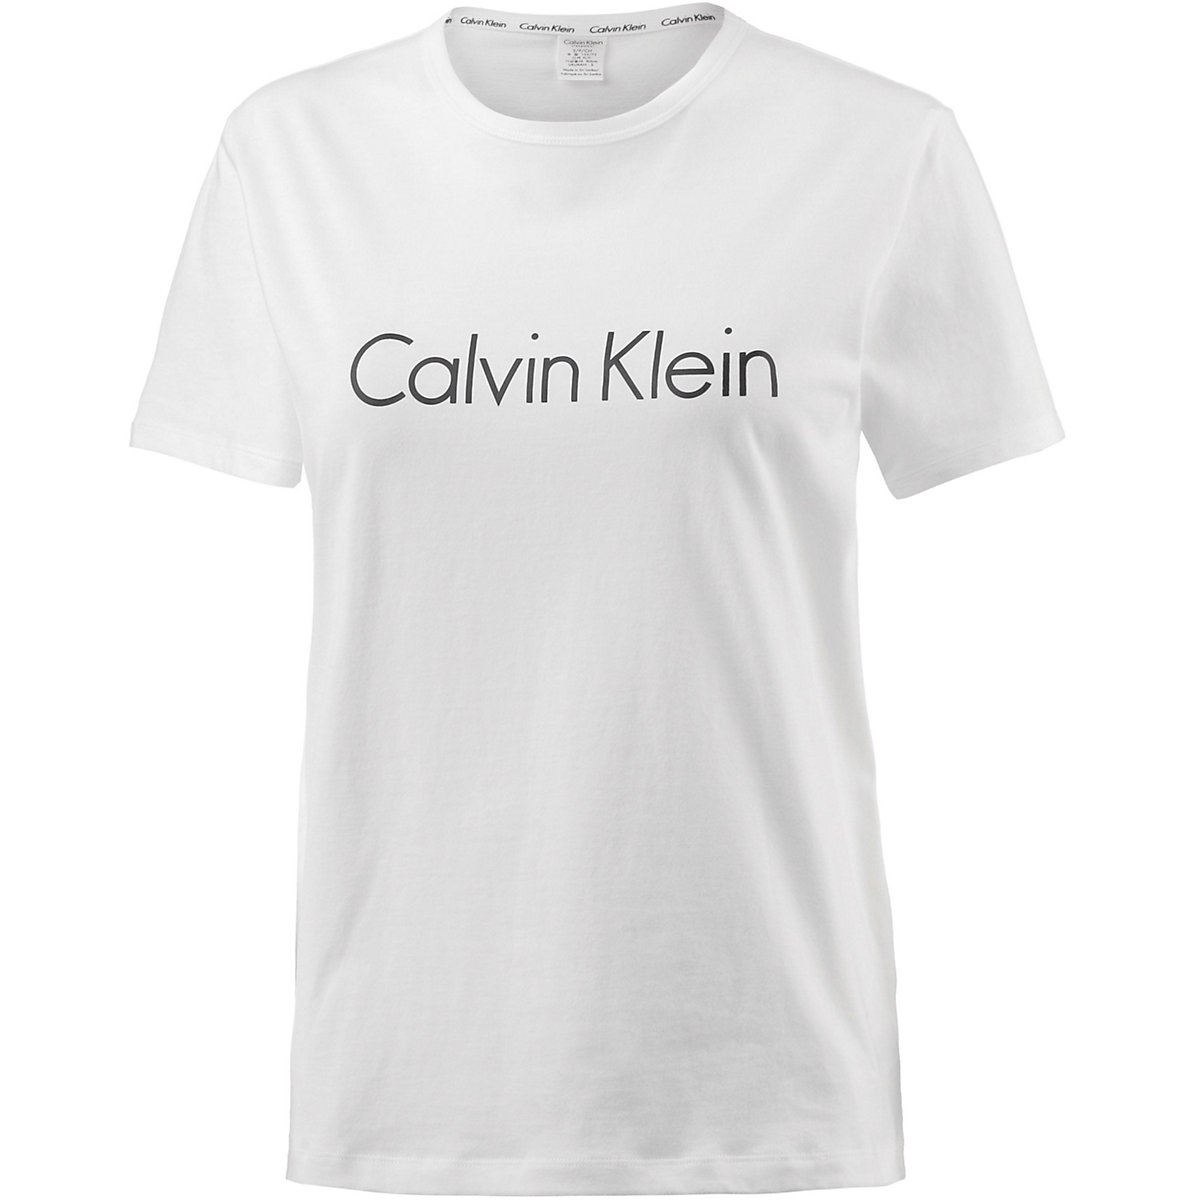 Calvin Klein T-Shirt für Mädchen weiß